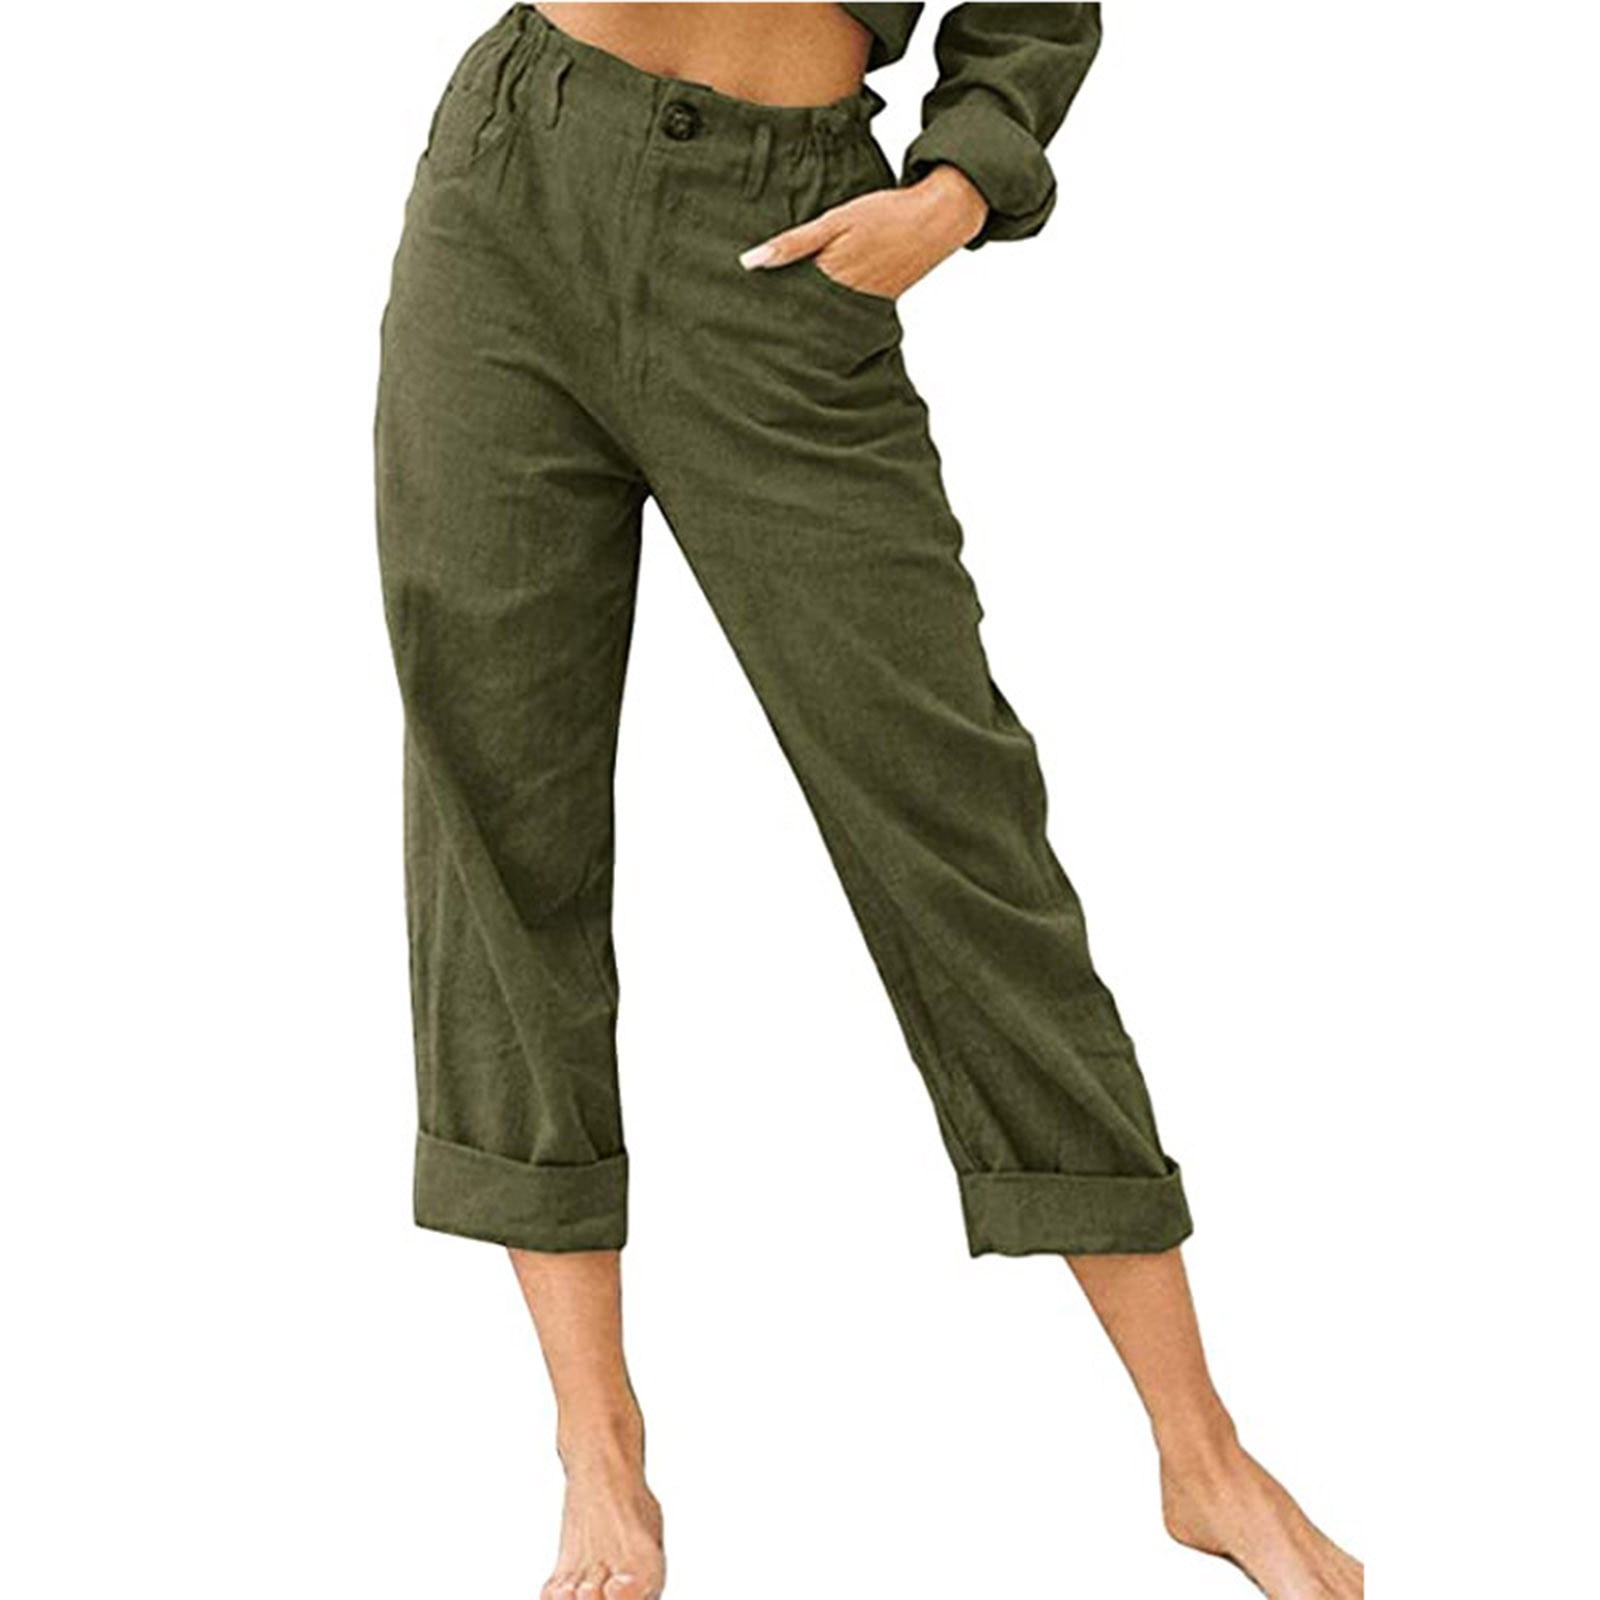 Summer Capri Pants for Women, Women's Cotton Linen Button Cropped Pants ...